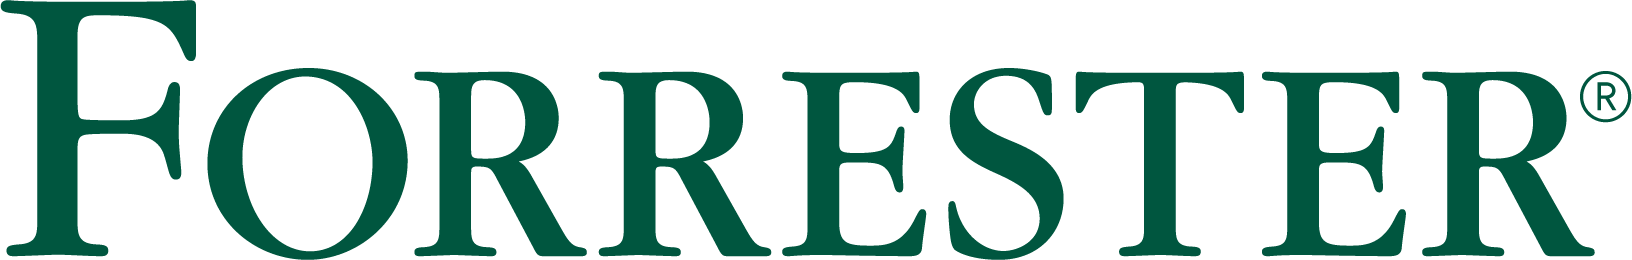 Forrester RGB logo